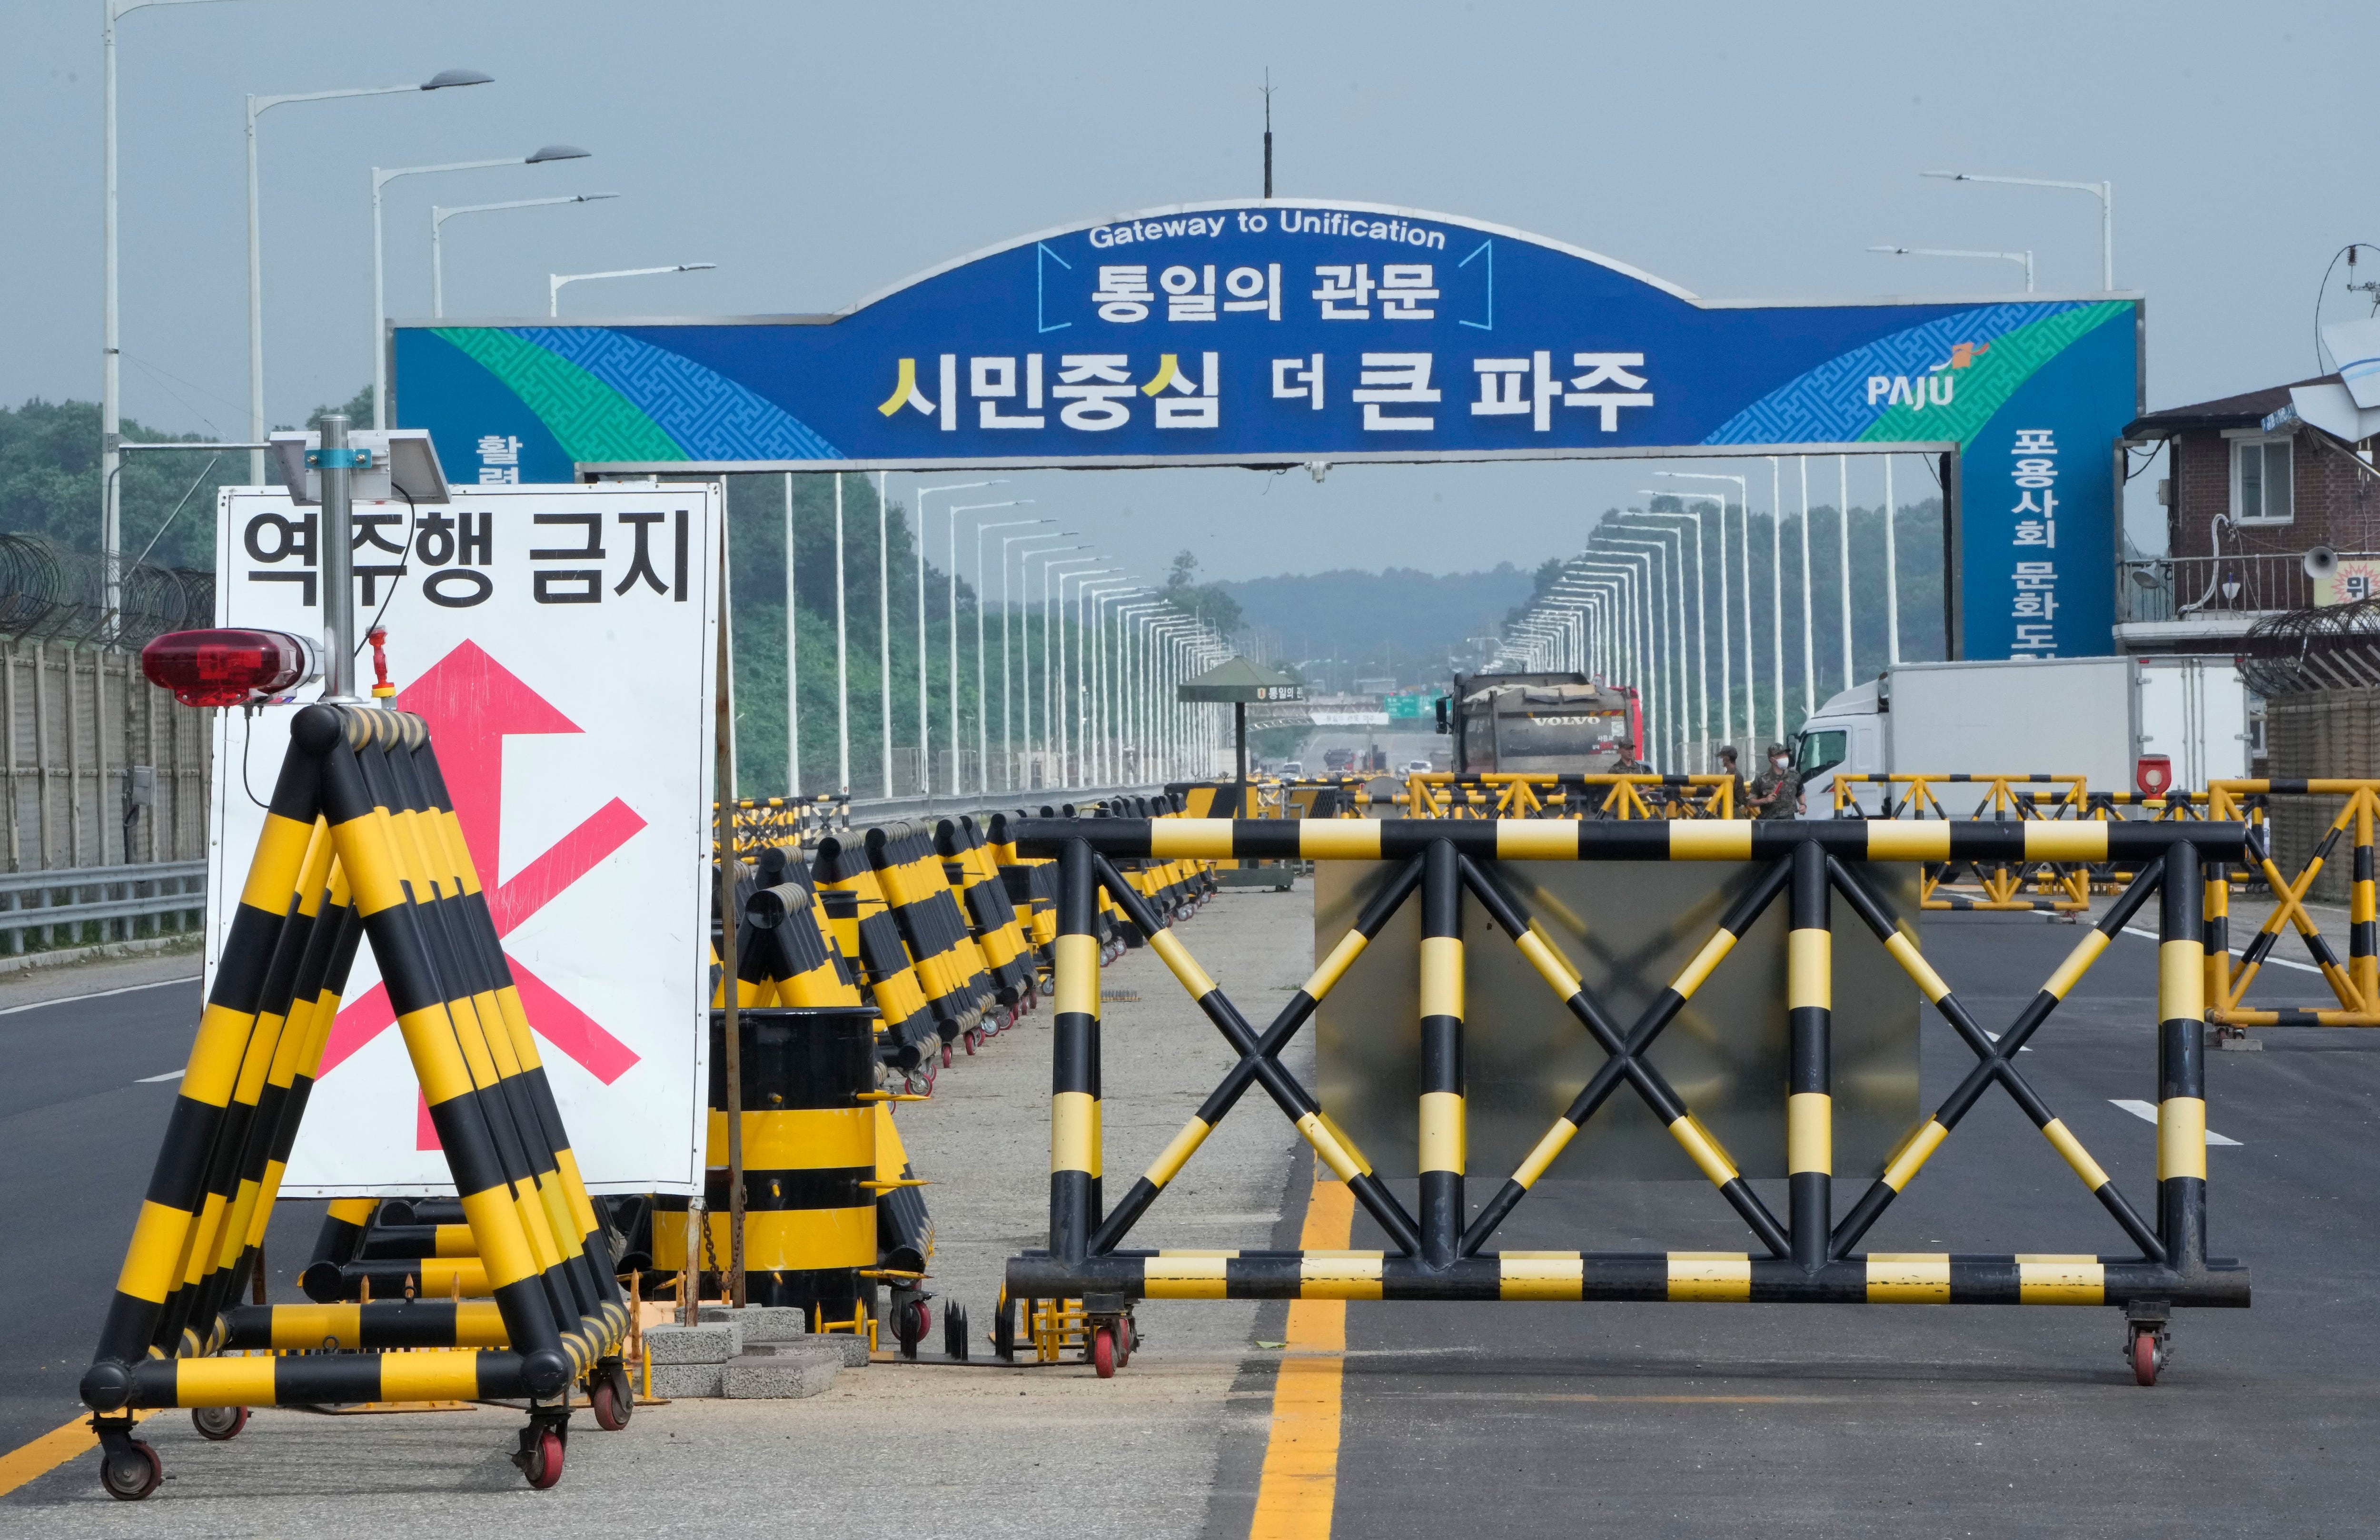 Se colocan barricadas cerca del Puente de Unificación, que conduce a Panmunjom en la Zona Desmilitarizada   (AP Photo/Ahn Young-joon)